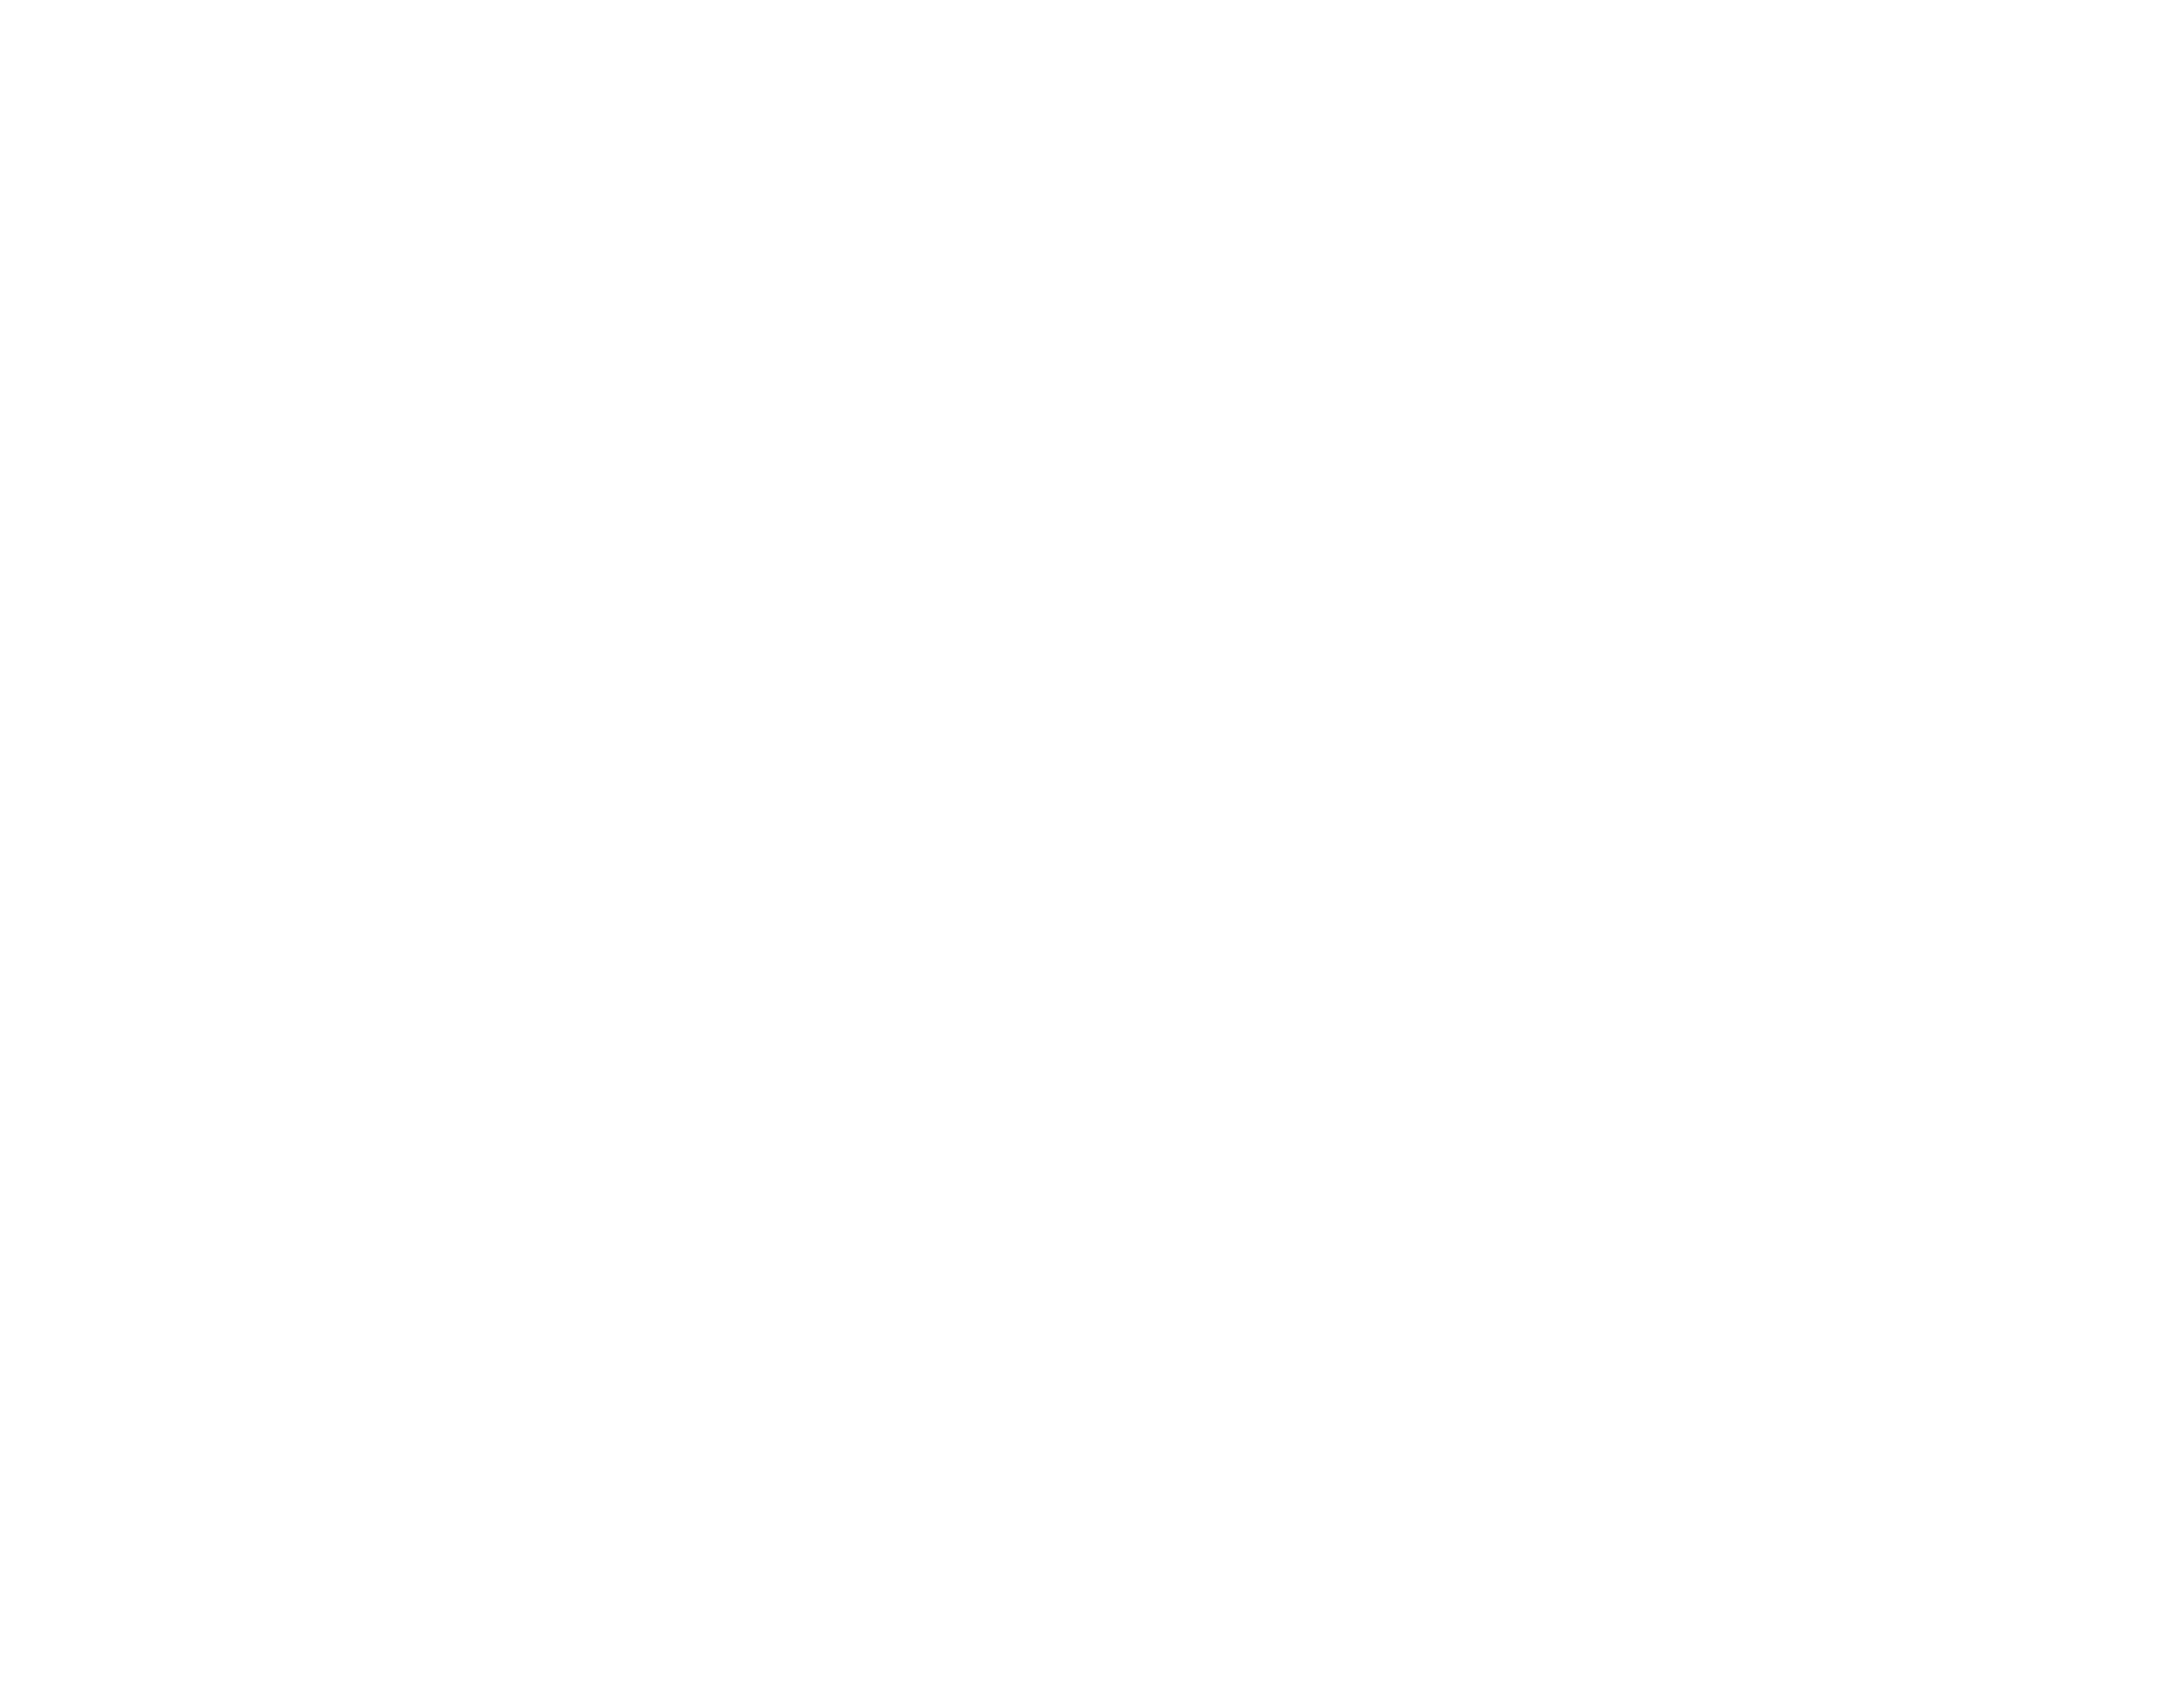 JAIPREET UPPAL